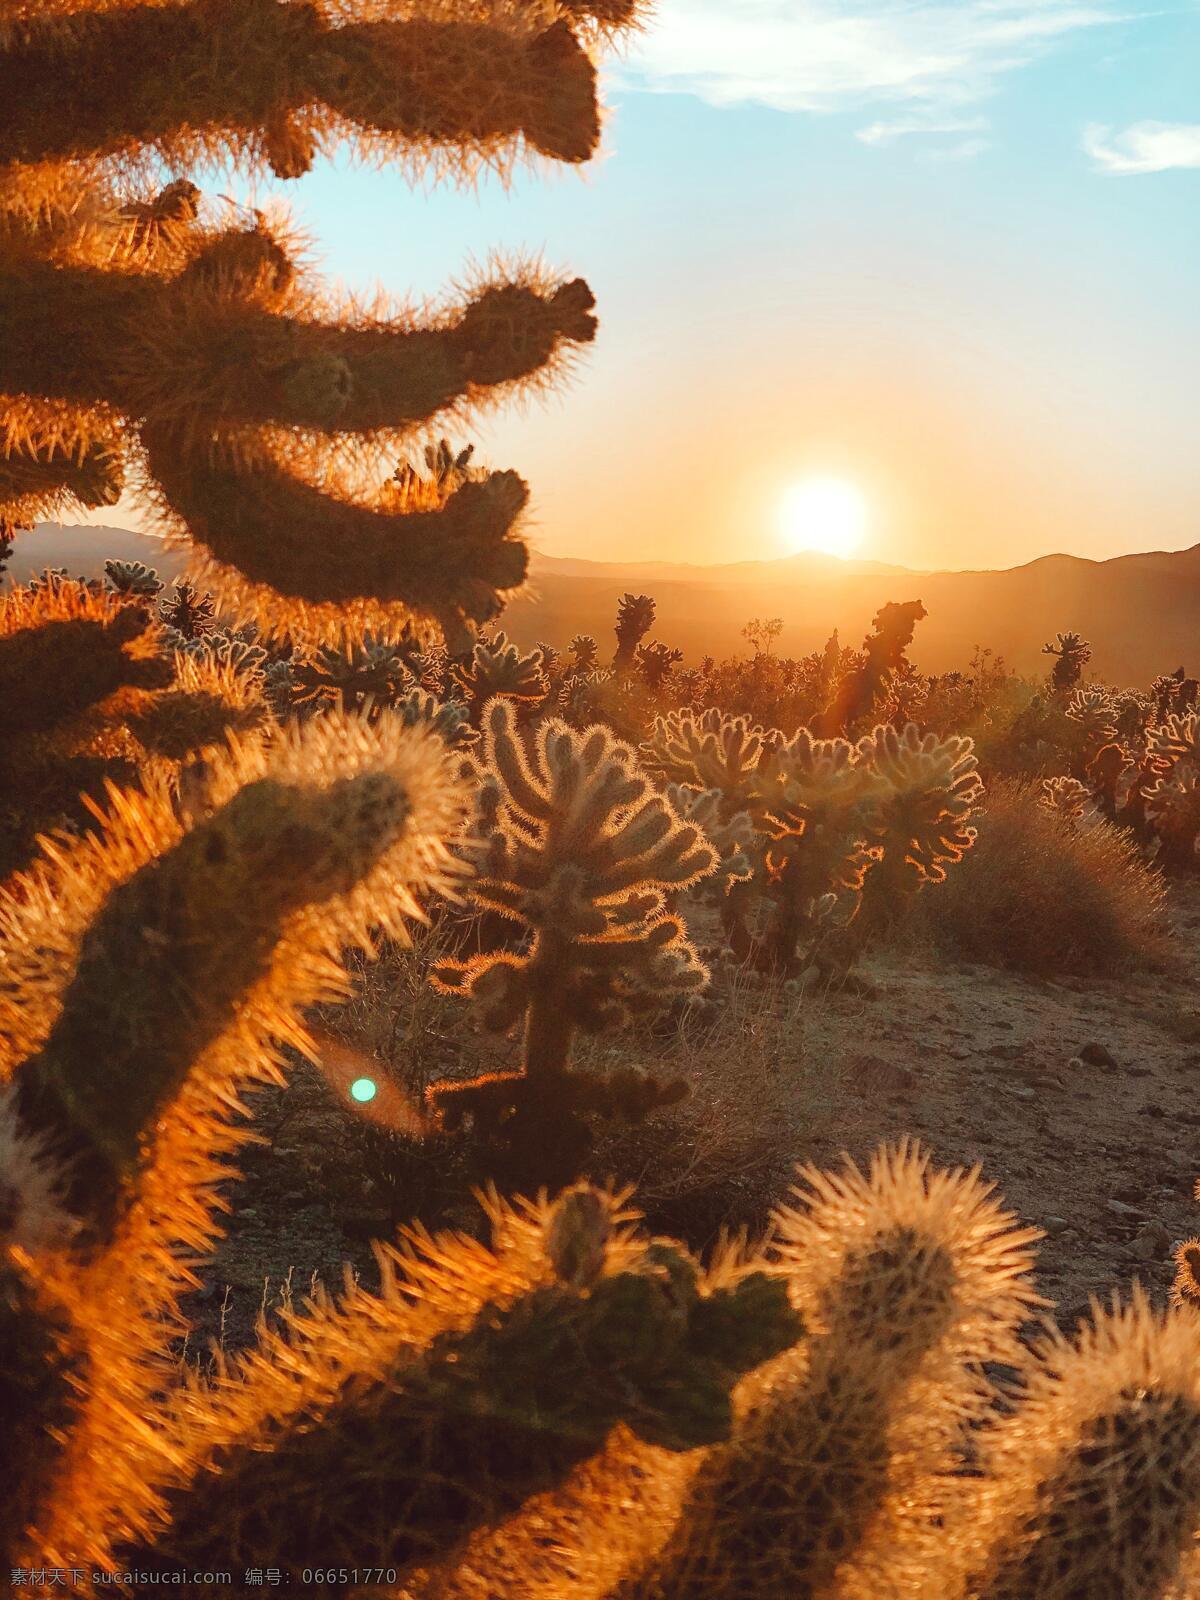 沙漠仙人掌 仙人掌 沙漠 仙人掌沙漠 沙漠植物 夕阳 沙漠夕阳 太阳下山 自然景观 自然风景